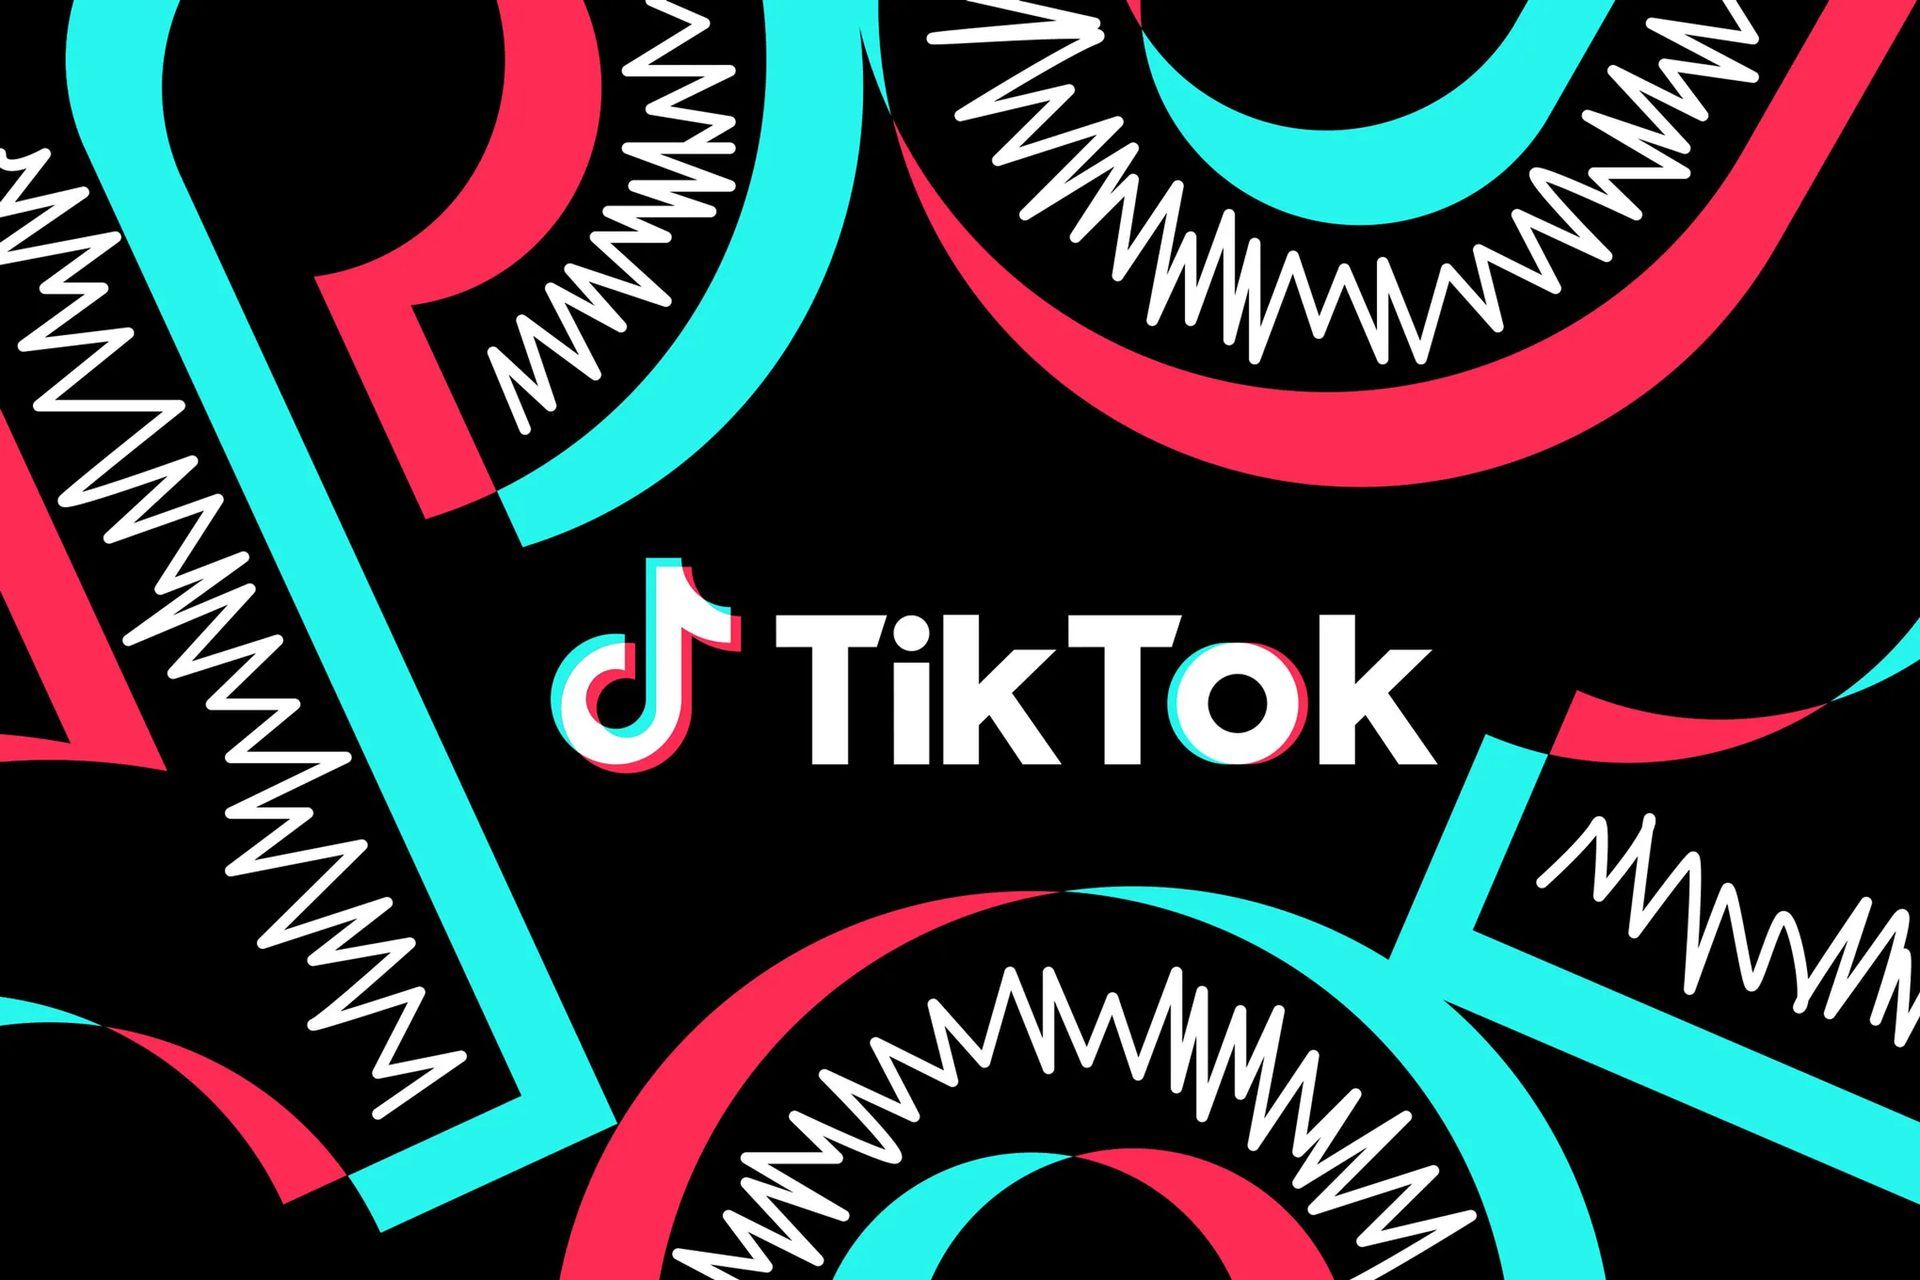 Les gens veulent TikTok, contrairement aux gouvernements